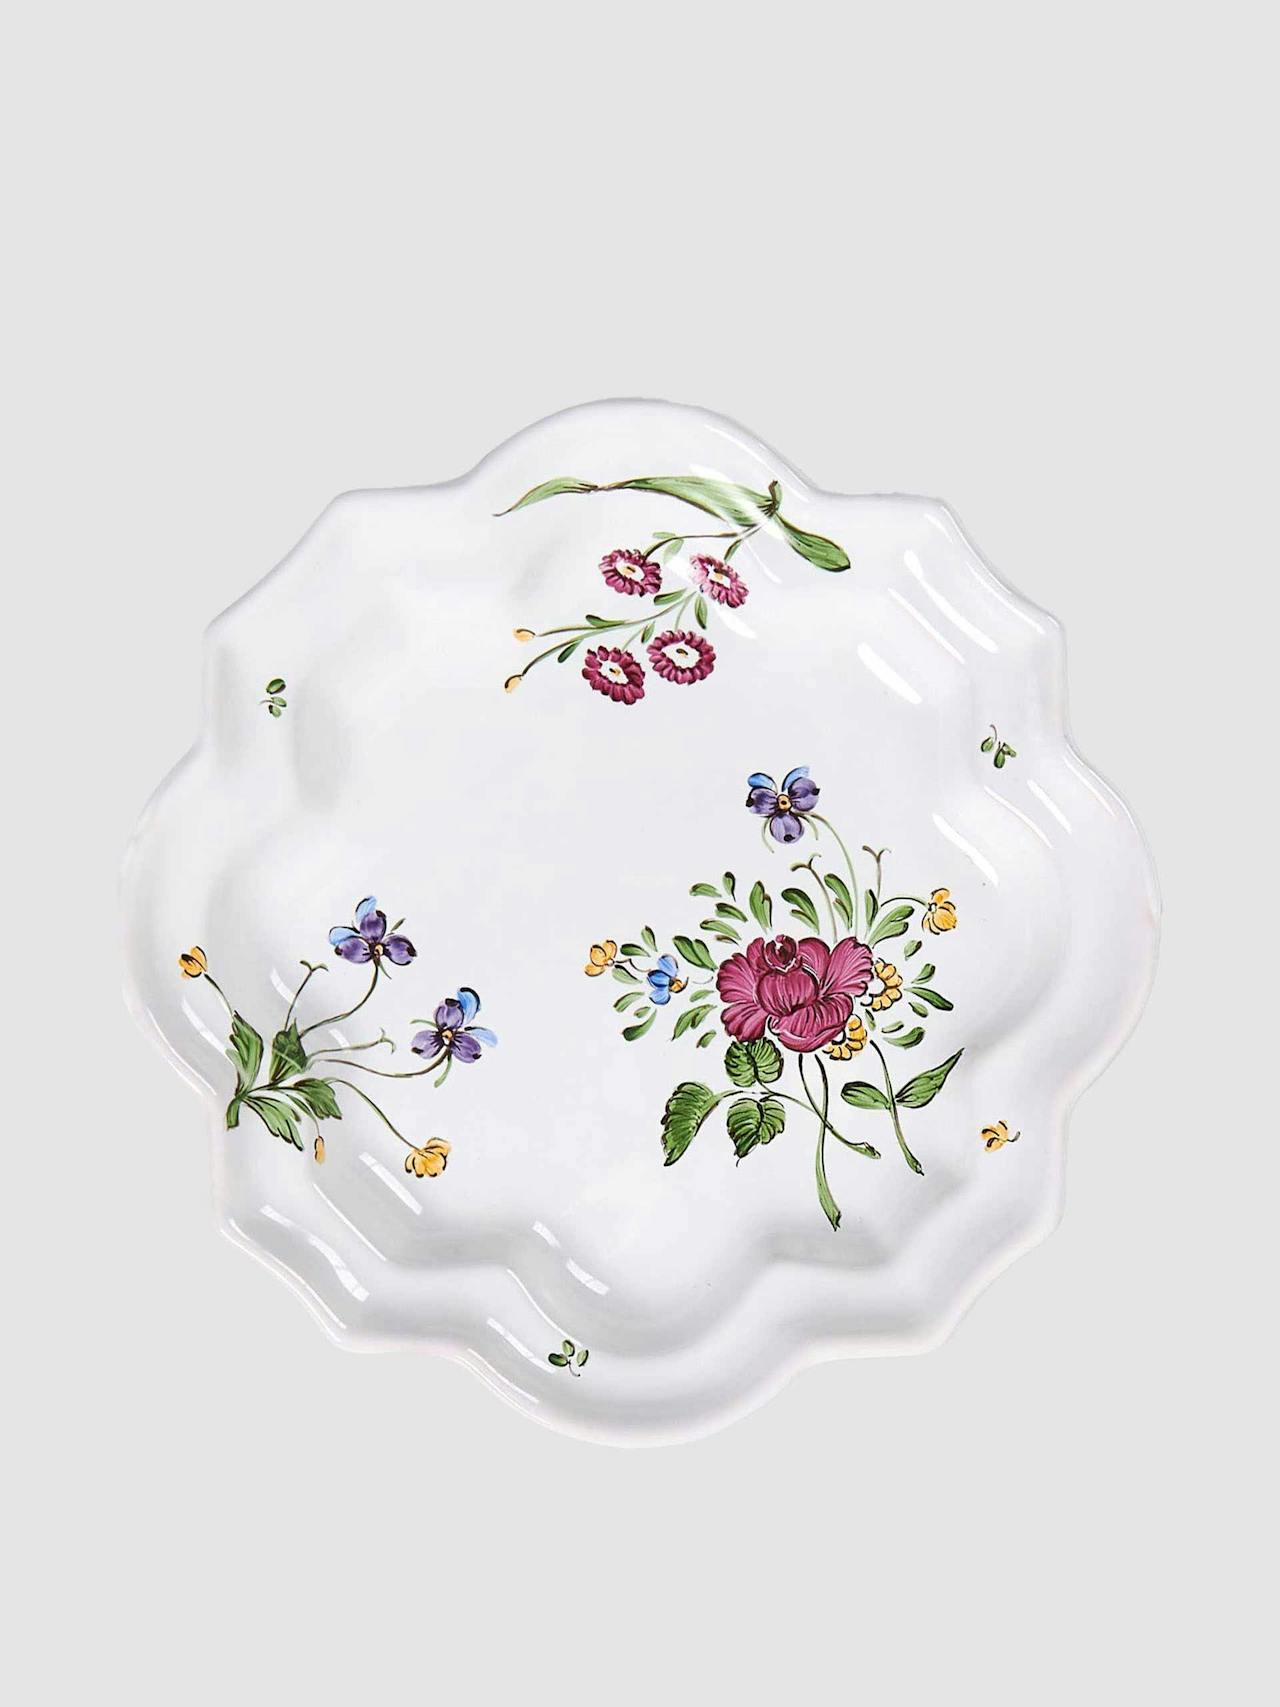 Picardie Drageoir floral dinner plate